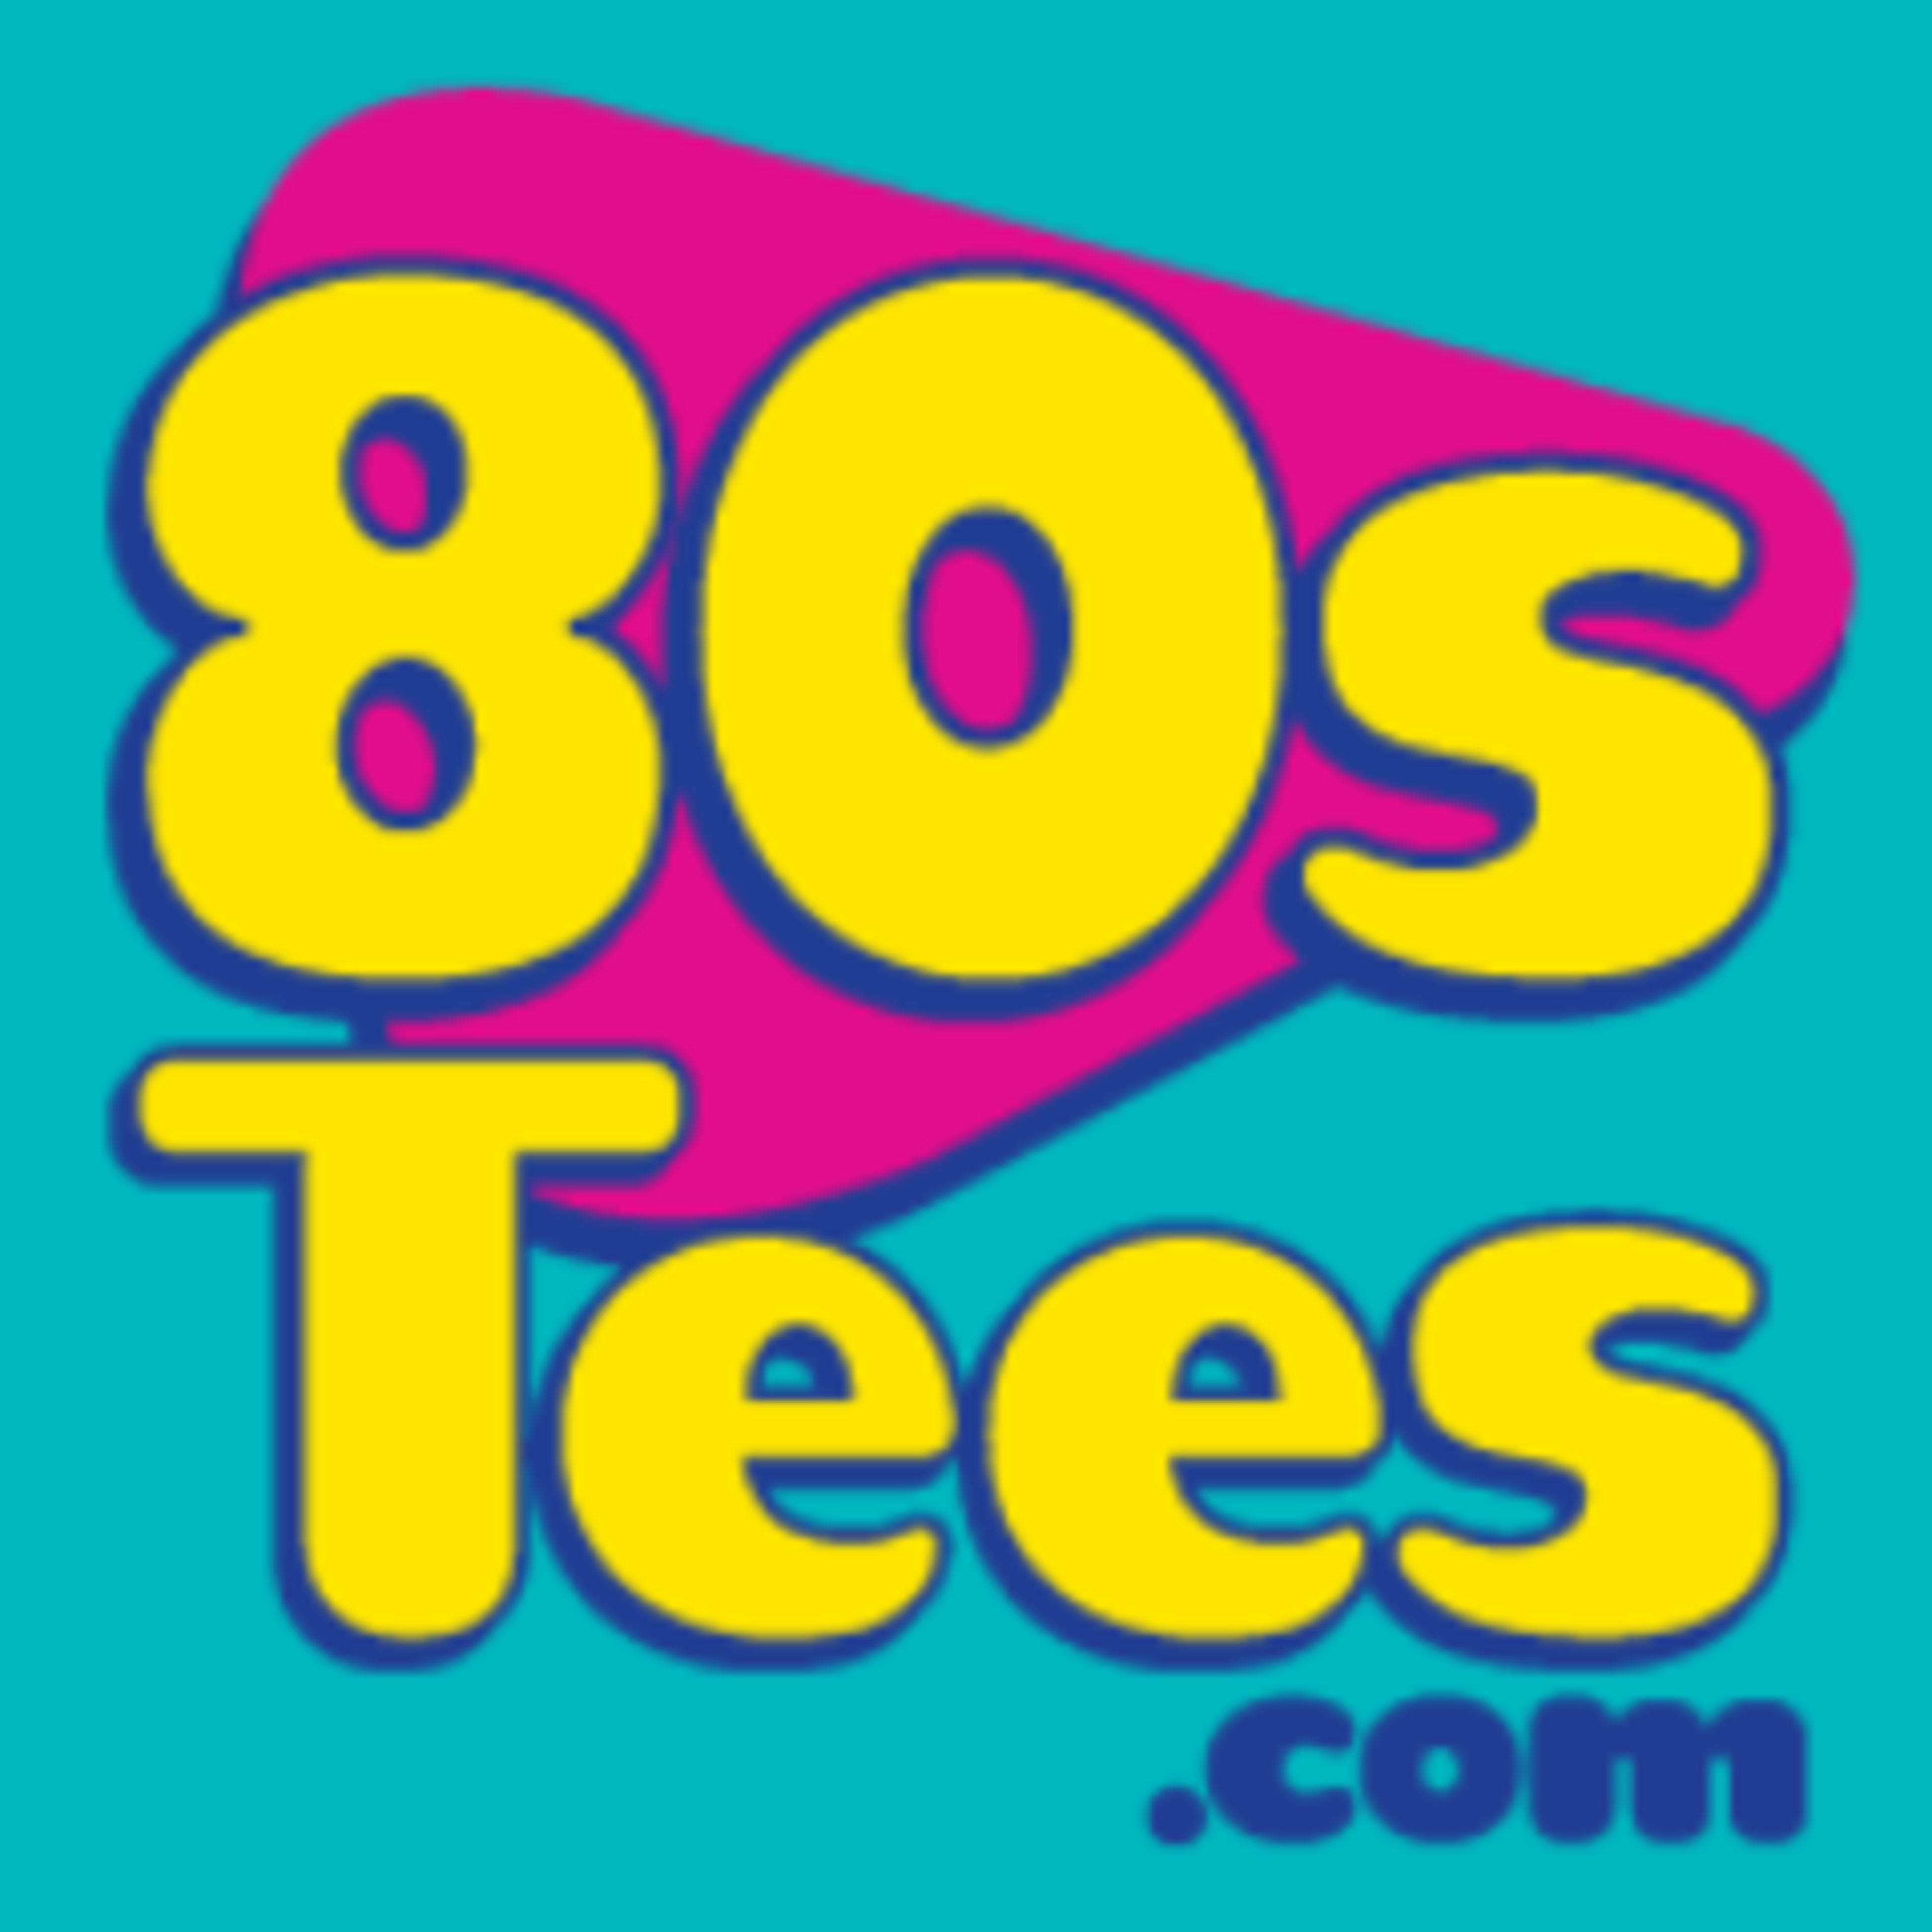 80sTees.com Code